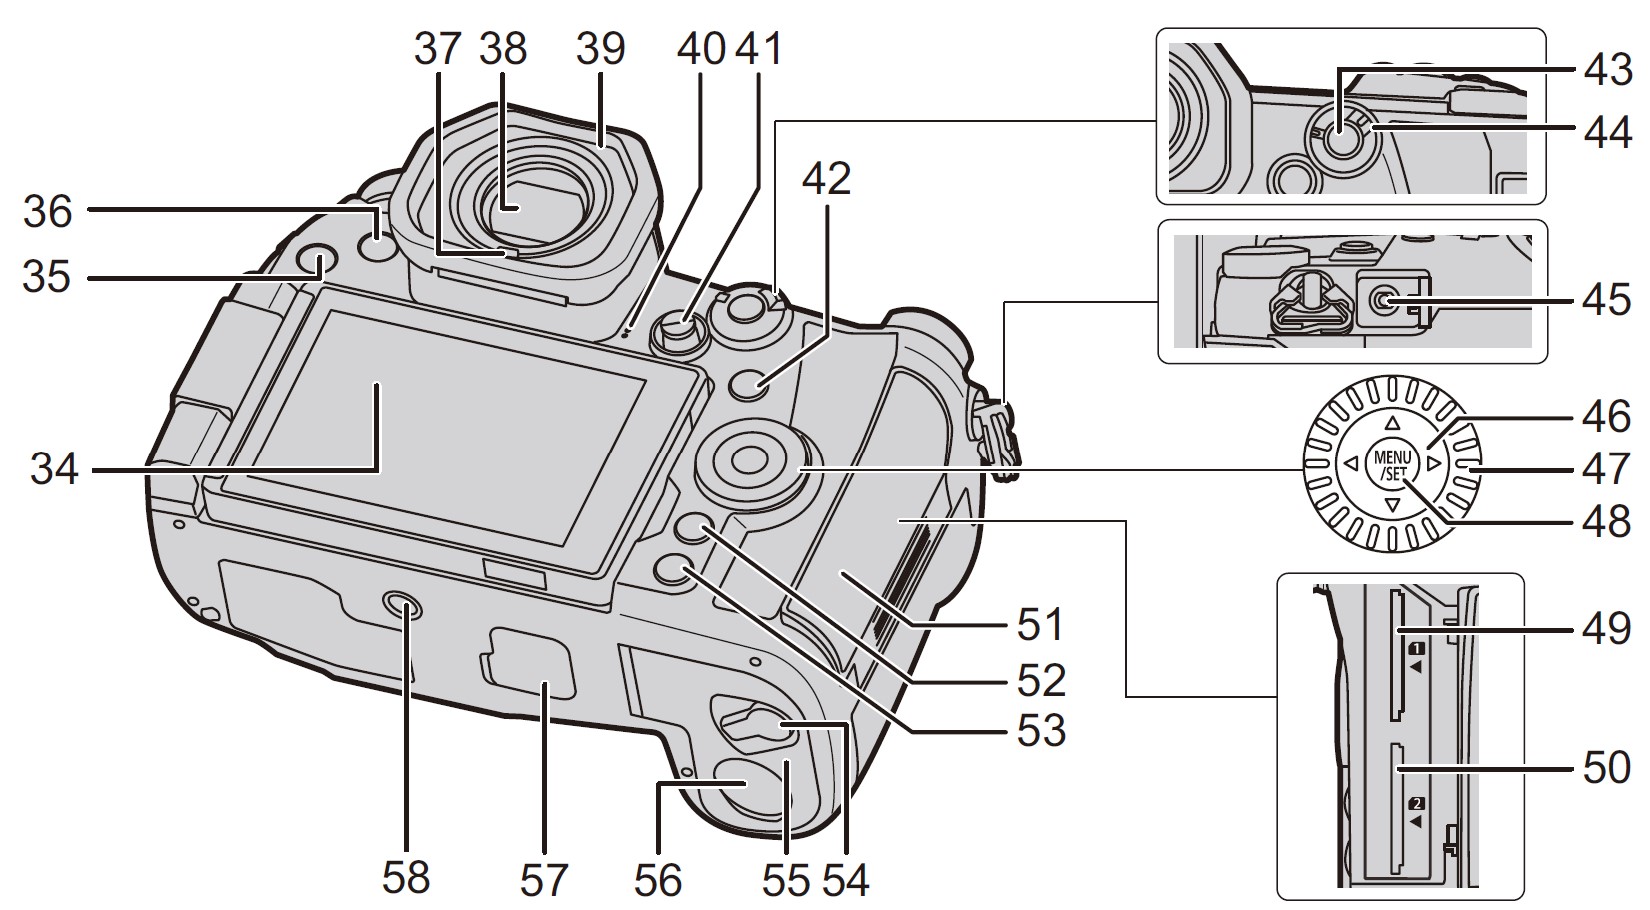 Panasonic-LUMIX-G9-4K-Digital-Camera-Owner-Manual-7